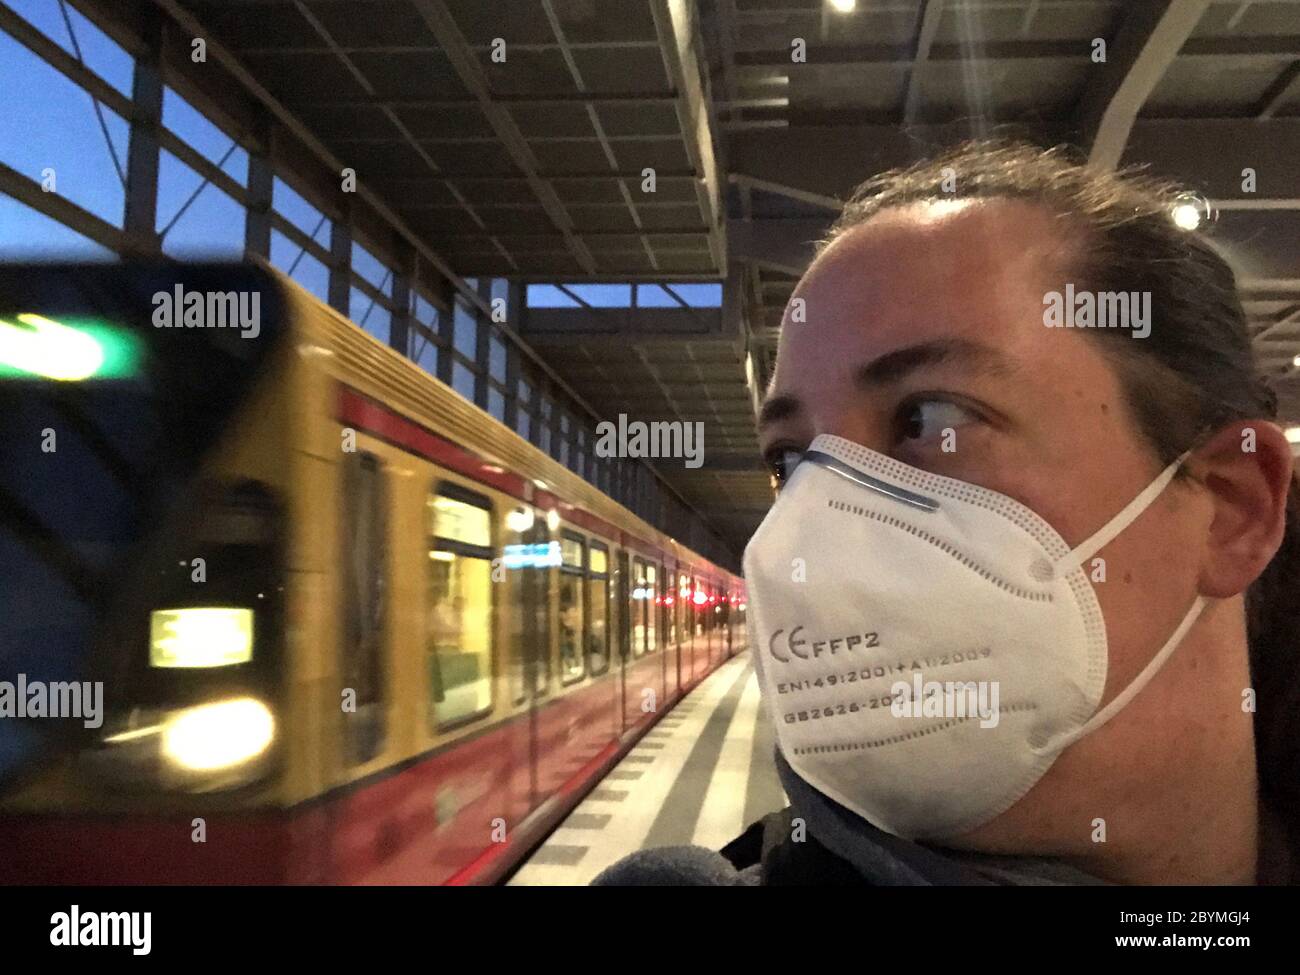 23.04.2020, Berlin, Allemagne - une femme à une station de S-Bahn porte un masque respiratoire en période de pandémie de couronne. 00S200423D057CAROEX.JPG [MODÈLE RELEA Banque D'Images